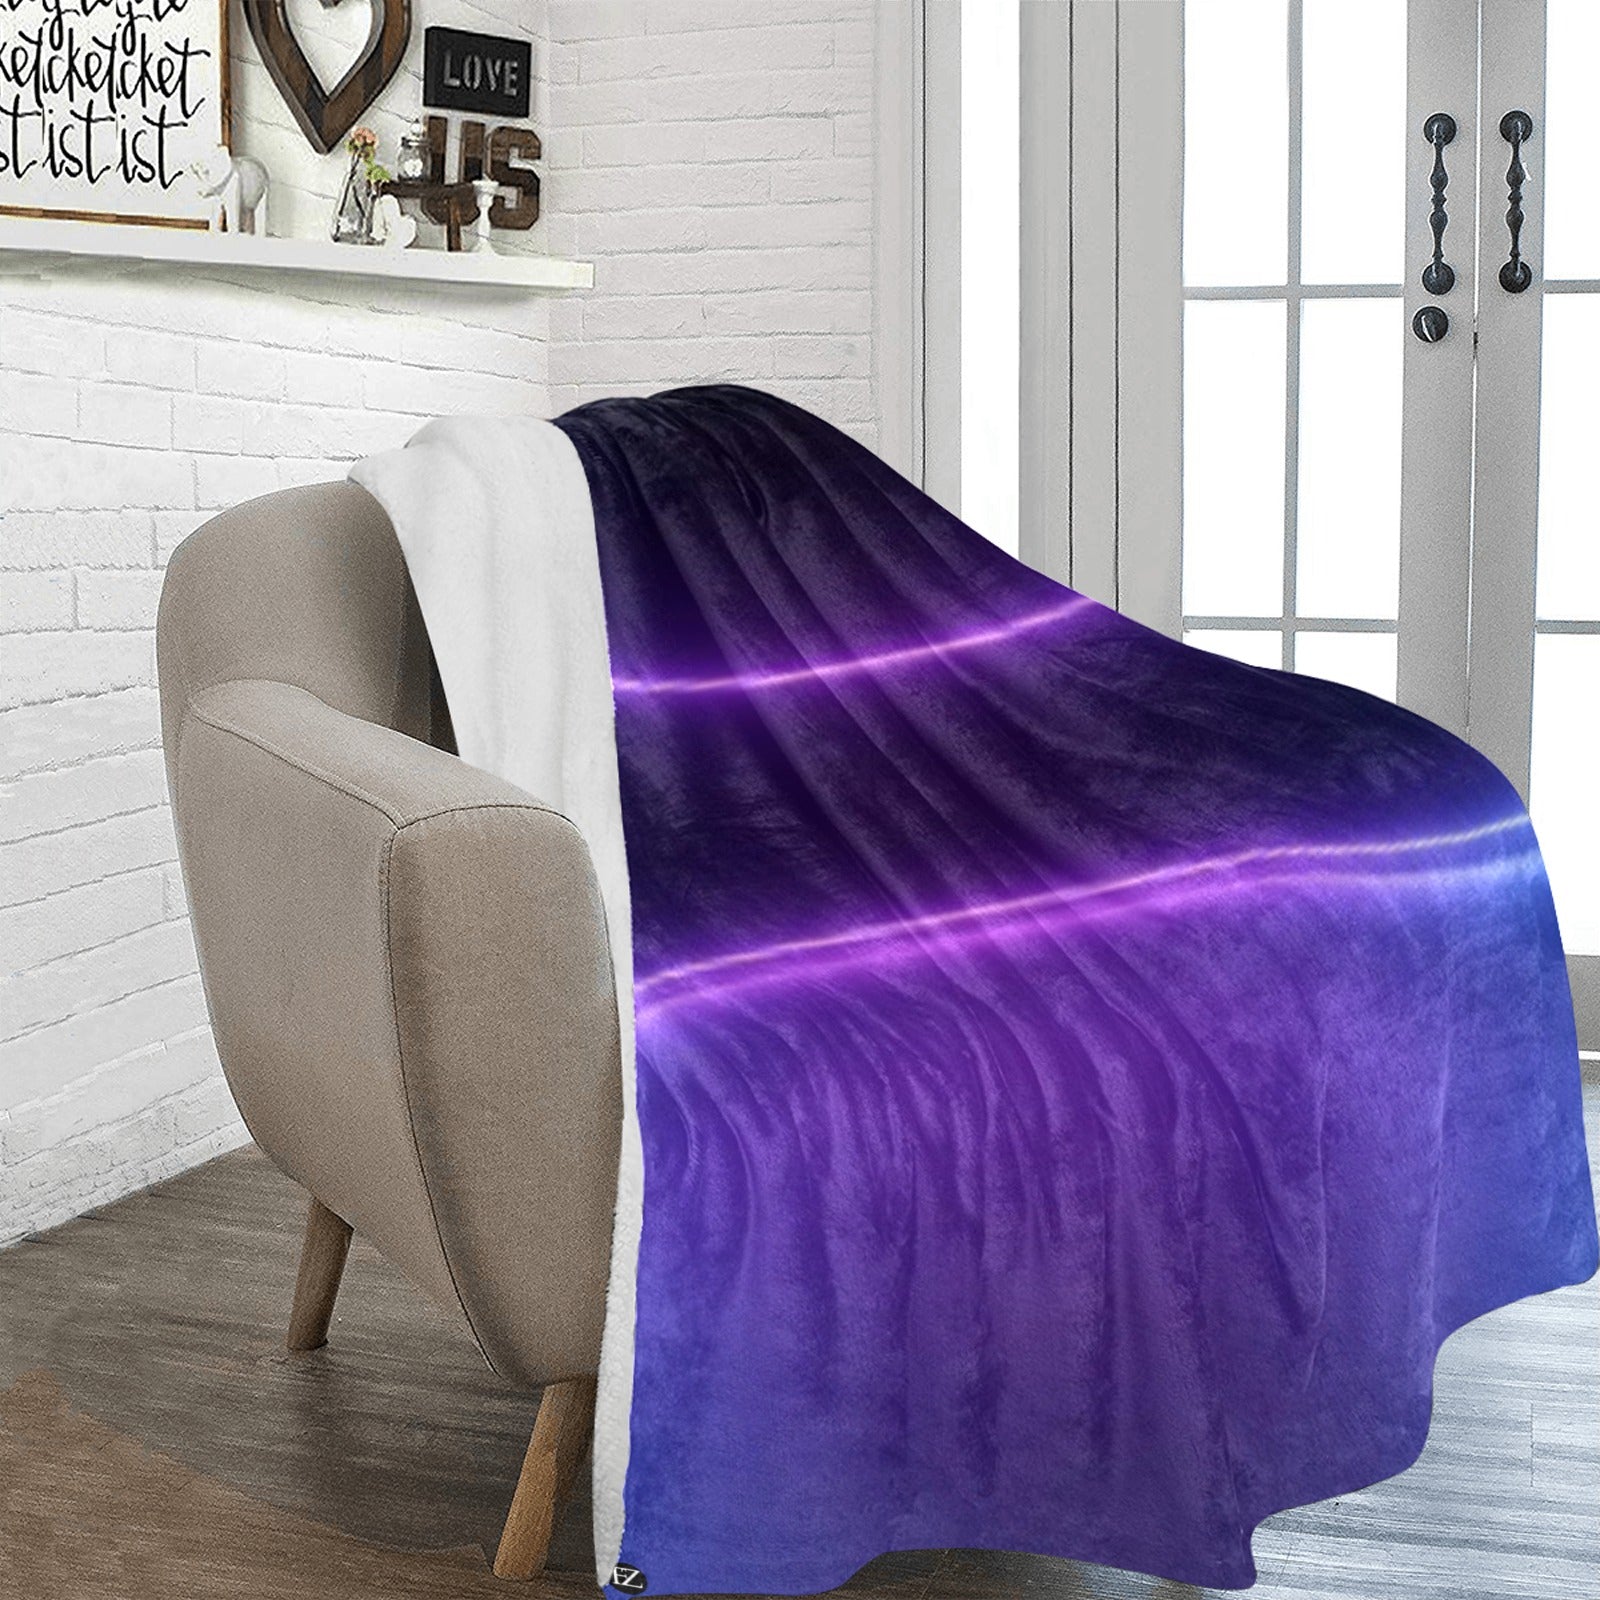 fz purple tye blanket ultra-soft micro fleece blanket 70"x80"